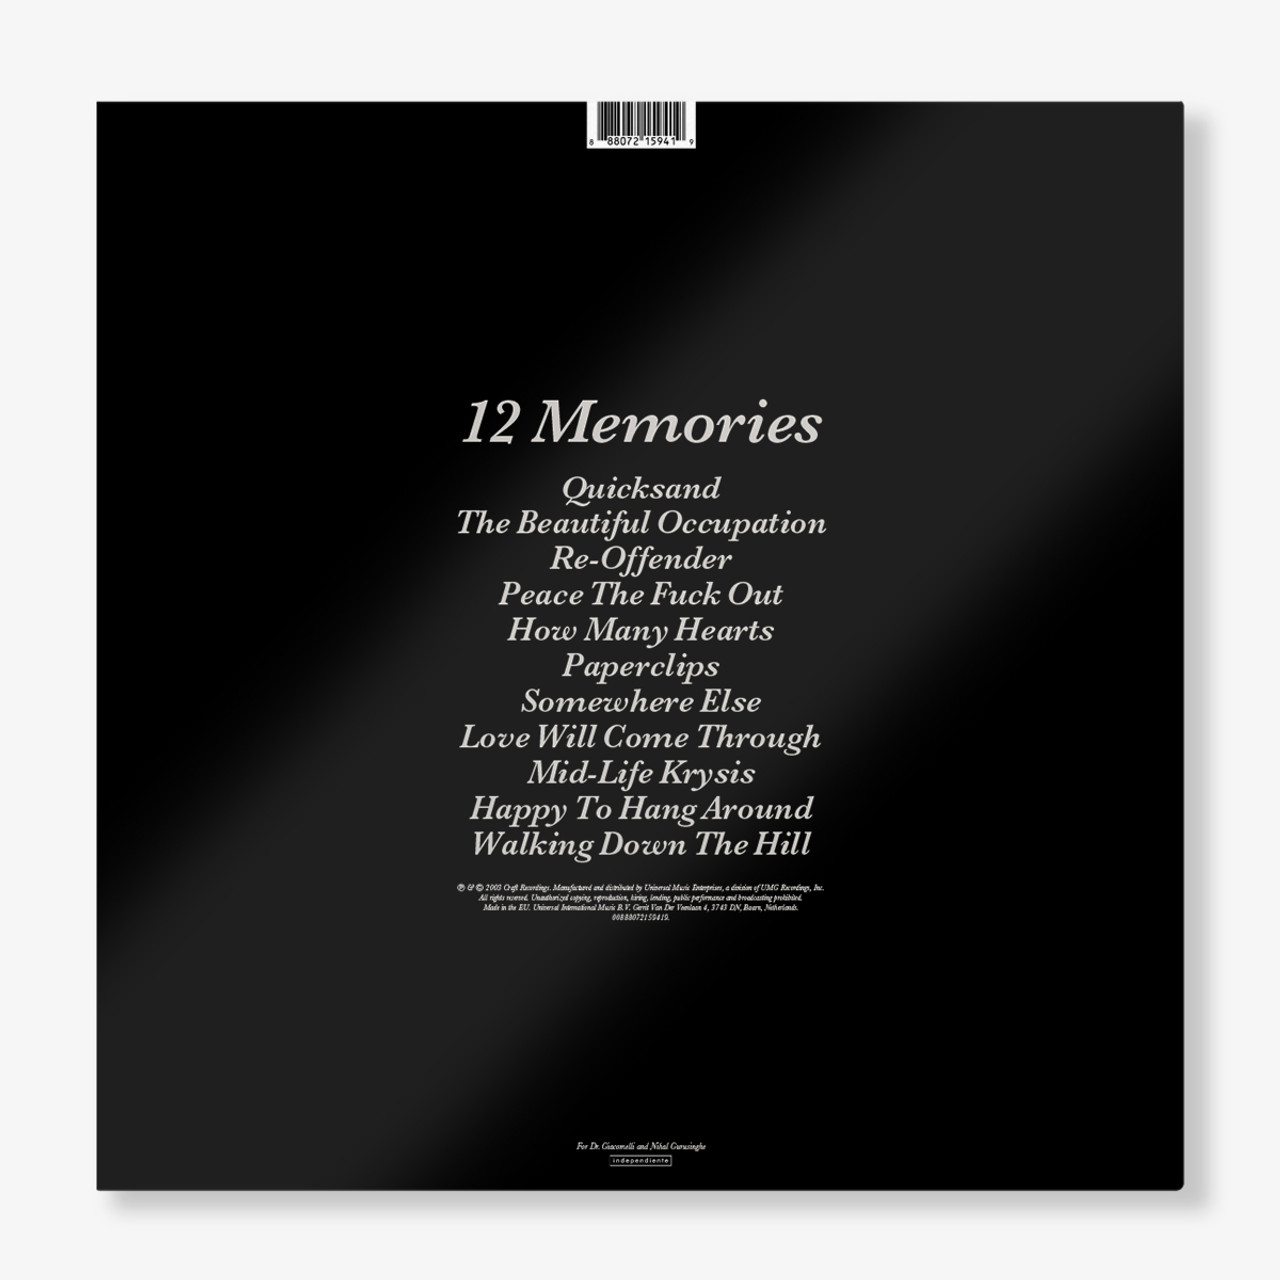 12 Memories - back cover